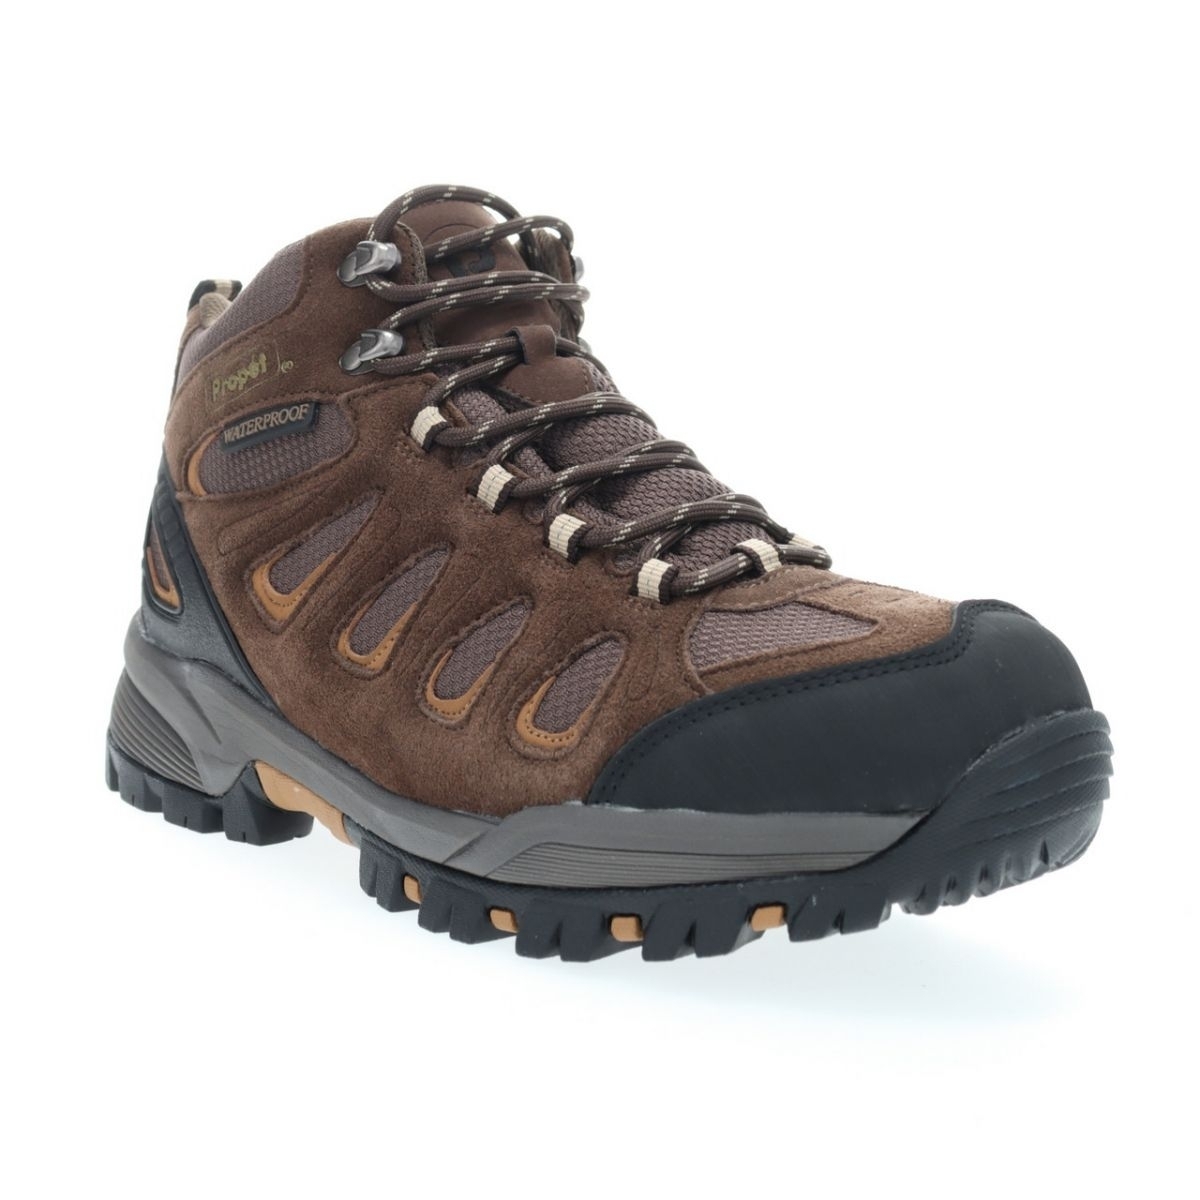 Propet Men's Ridge Walker Hiking Boot Brown - M3599BR 8 XX US Men BROWN - BROWN, 13 XX-Wide